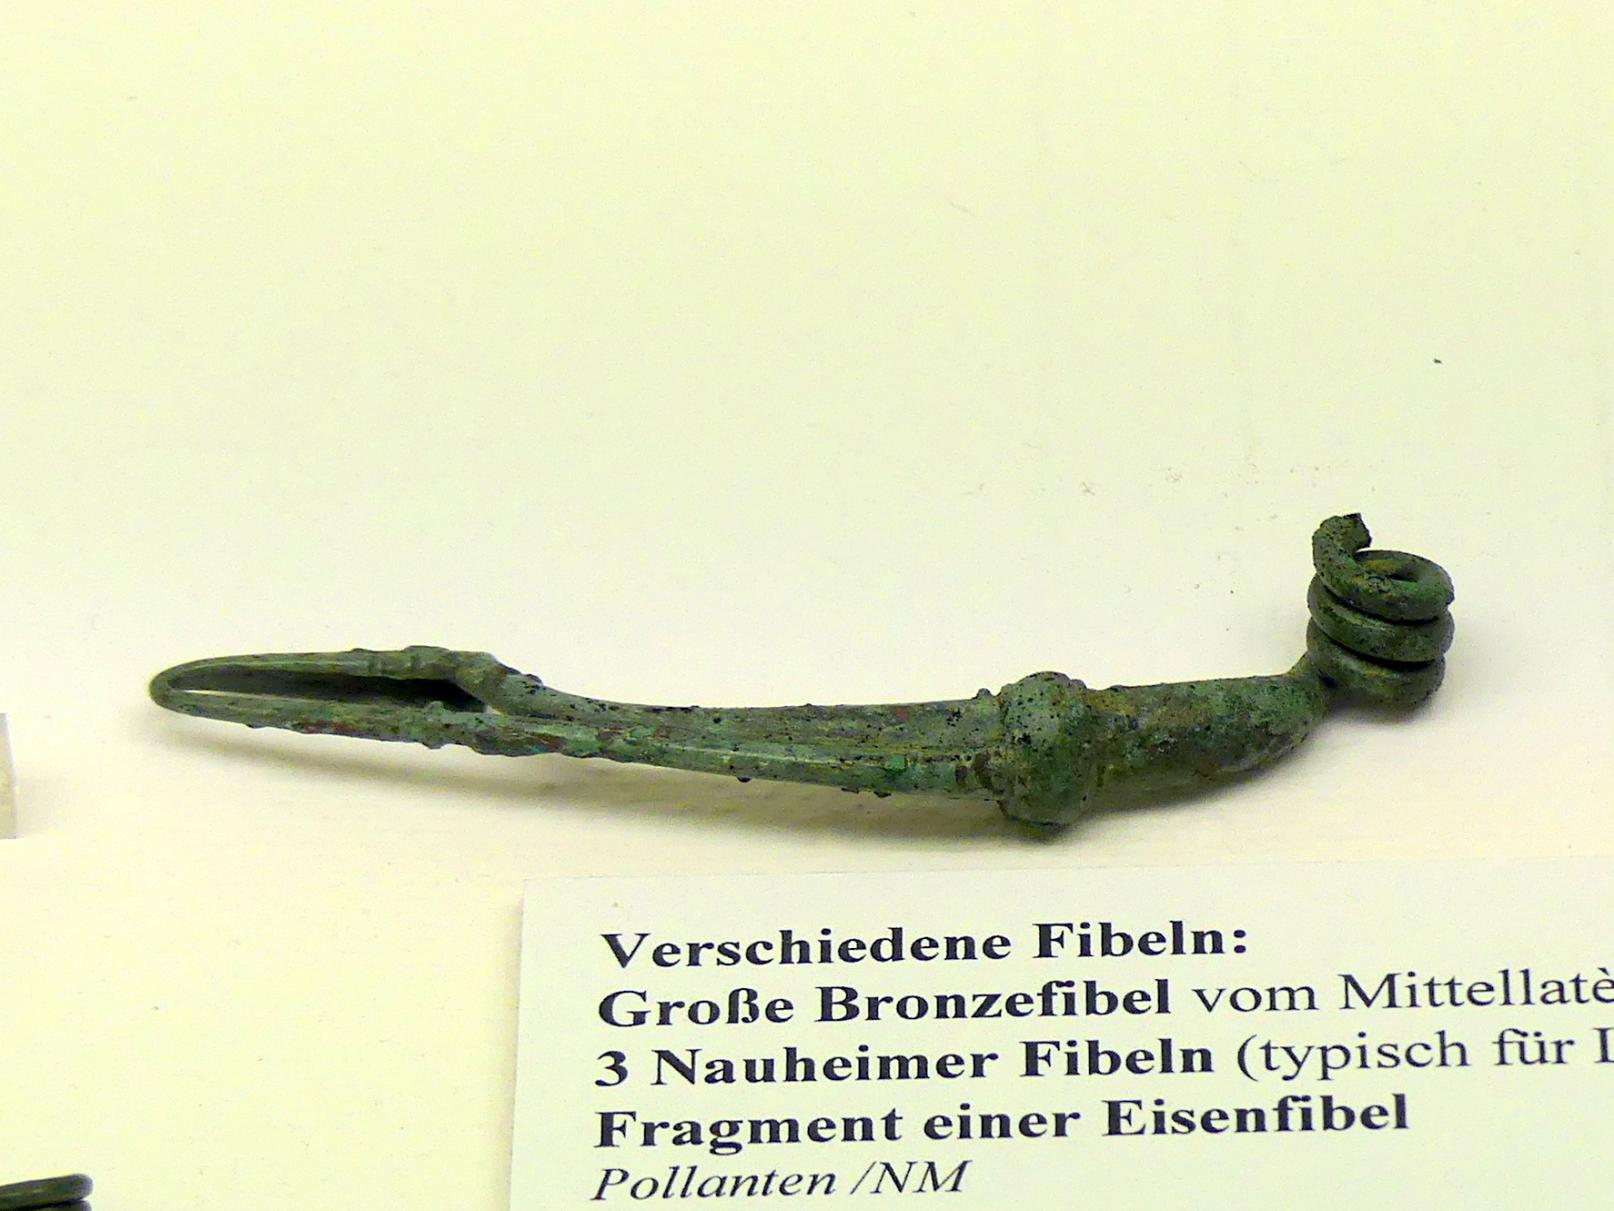 Große Bronzefibel vom Mittellatèneschema, Spätlatènezeit D, 700 - 100 v. Chr., Bild 1/2